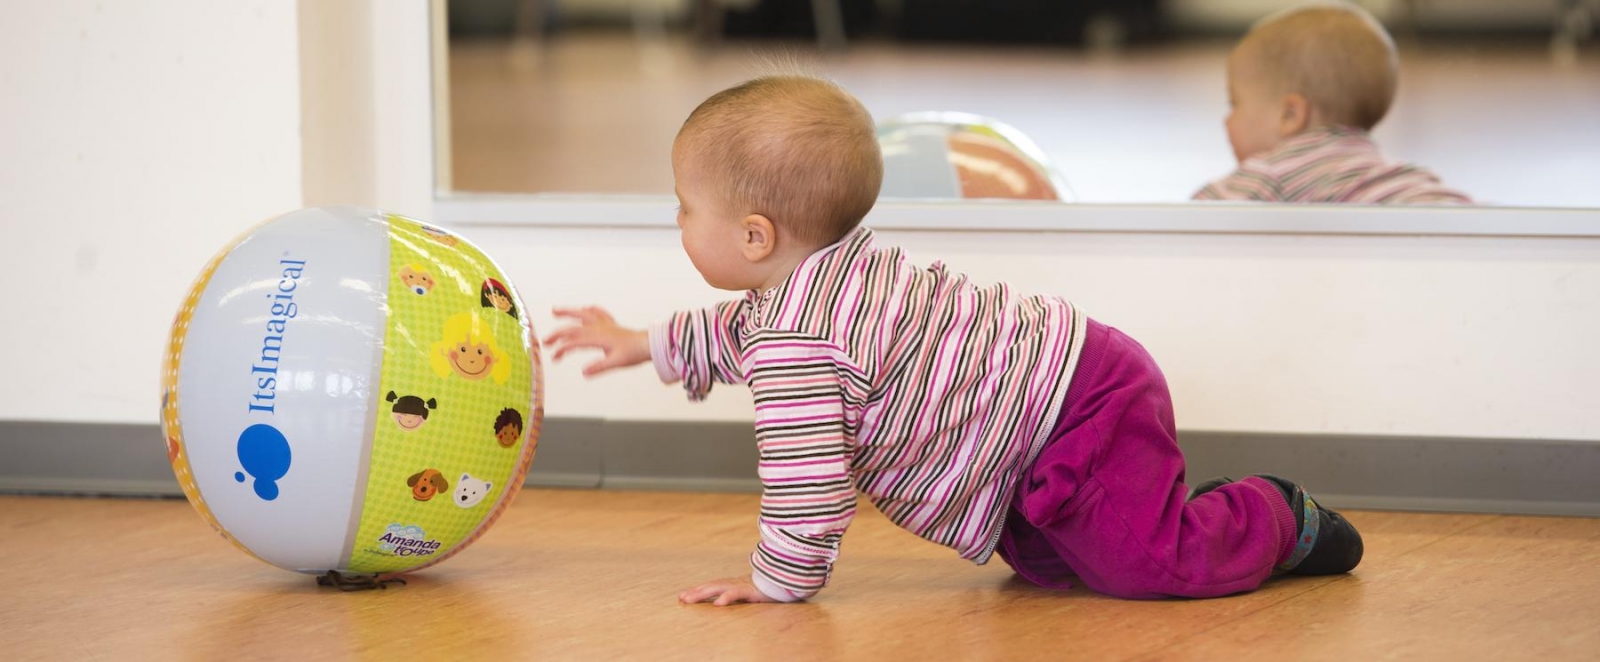 Ein Baby krabbelt über den Boden und streckt seine linke Hand nach einen bunten Plastikball aus.